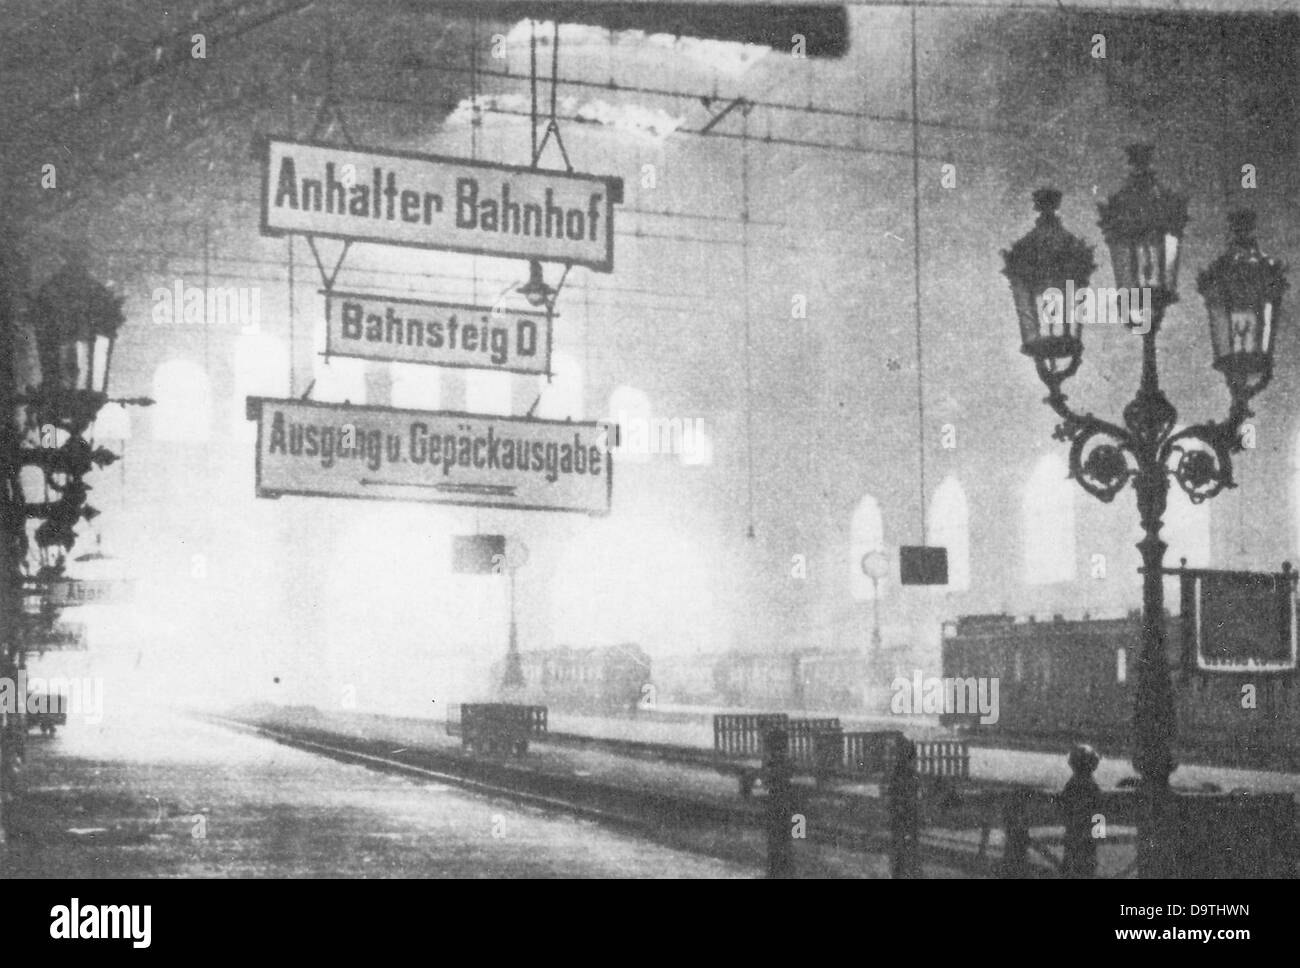 Révolution allemande 1918/1919: La reproduction de la Schweizer Illustrirte Zeitung (journal illustré suisse) du 19 mars 1919 montre l'Anhalter Bahnhof vide à Berlin, en Allemagne, pendant les émeutes. Fotoarchiv für Zeitgeschichte Banque D'Images